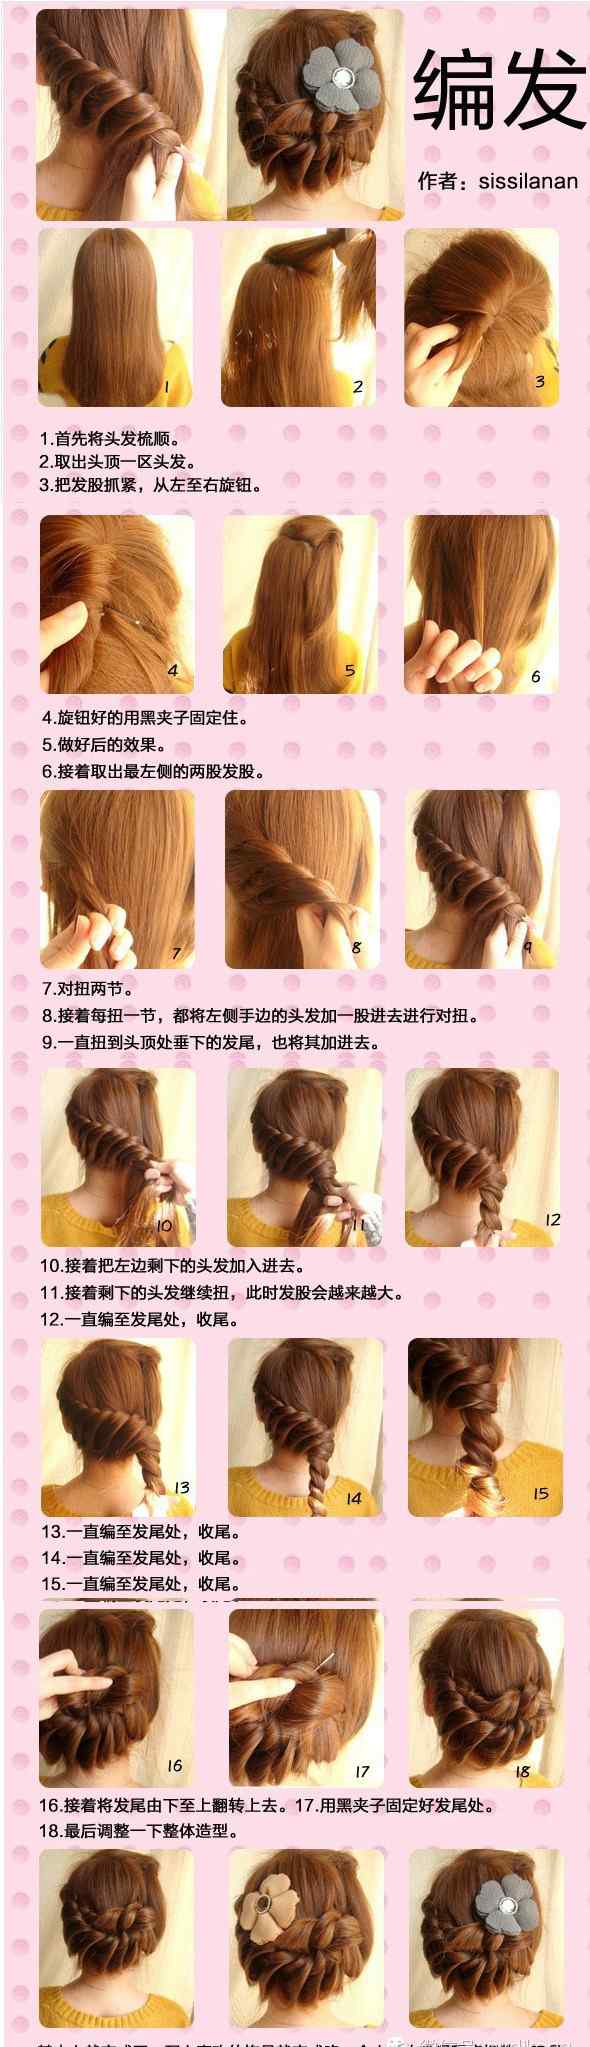 韩式发型扎法步骤 30种简单好看的扎头发方法图解